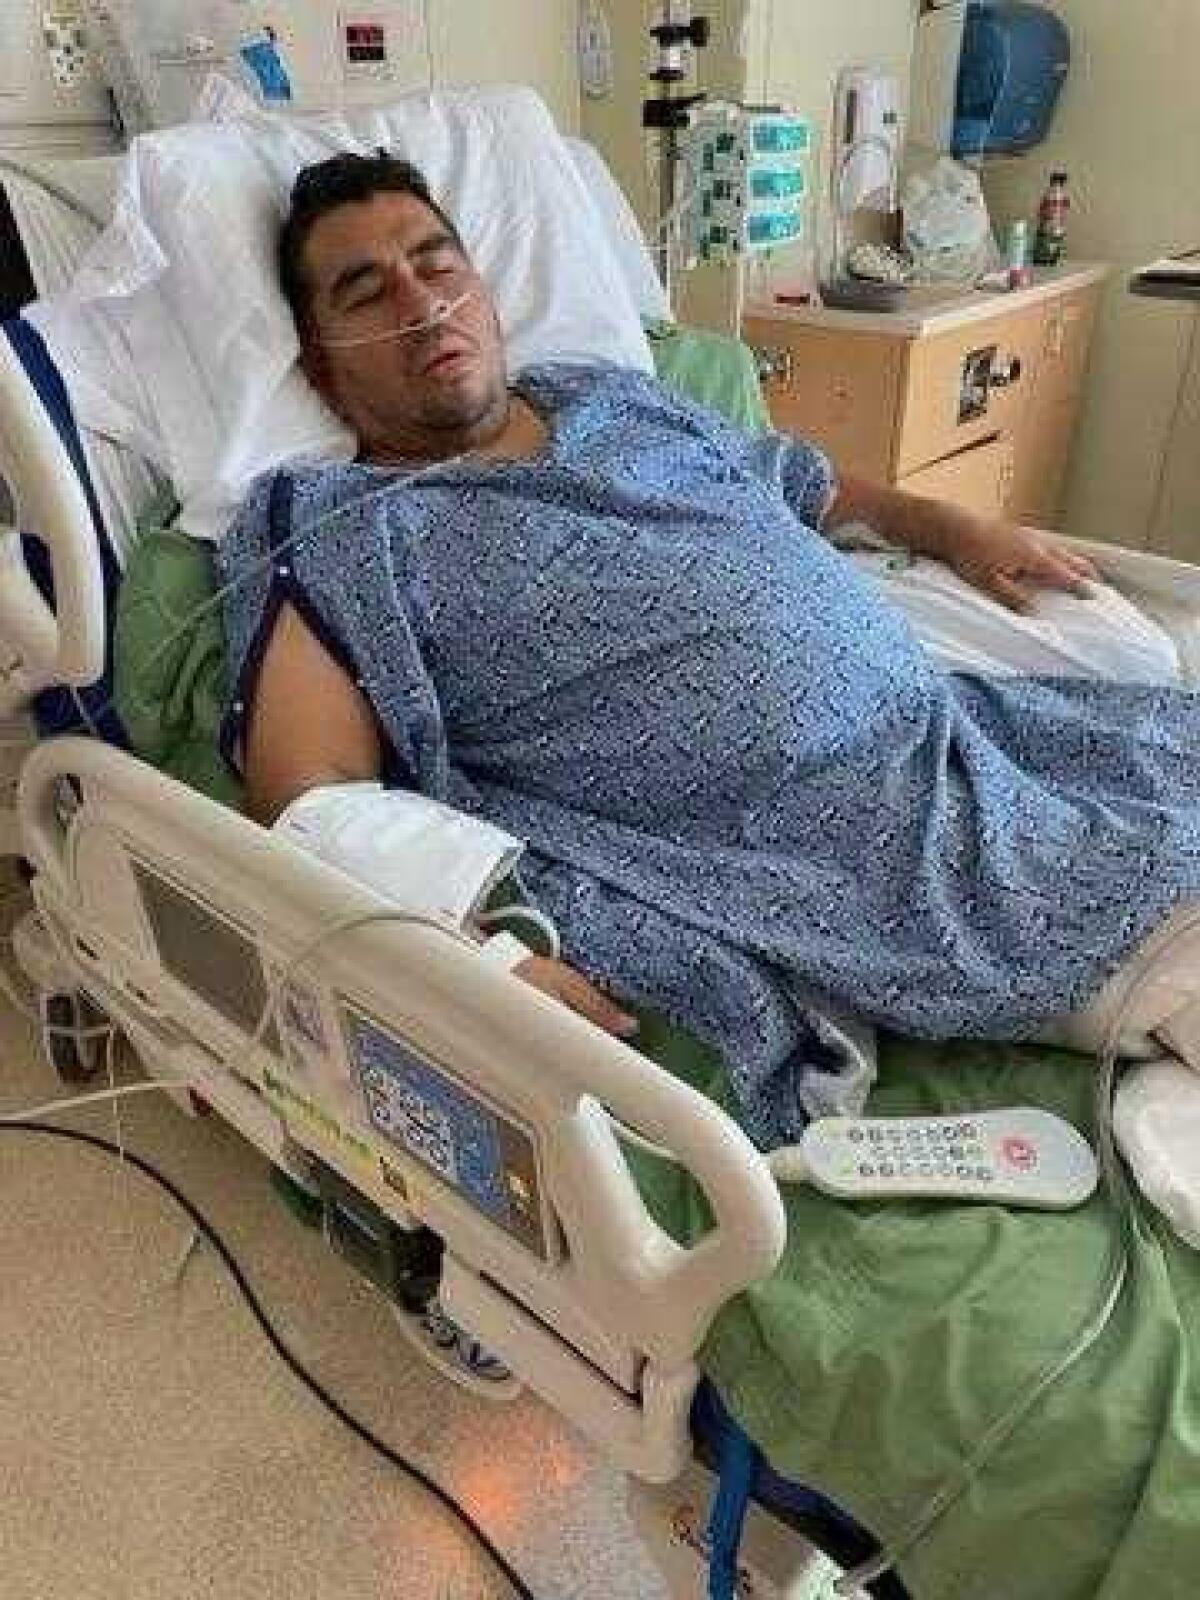 Luis Hernandez lies in a hospital bed.